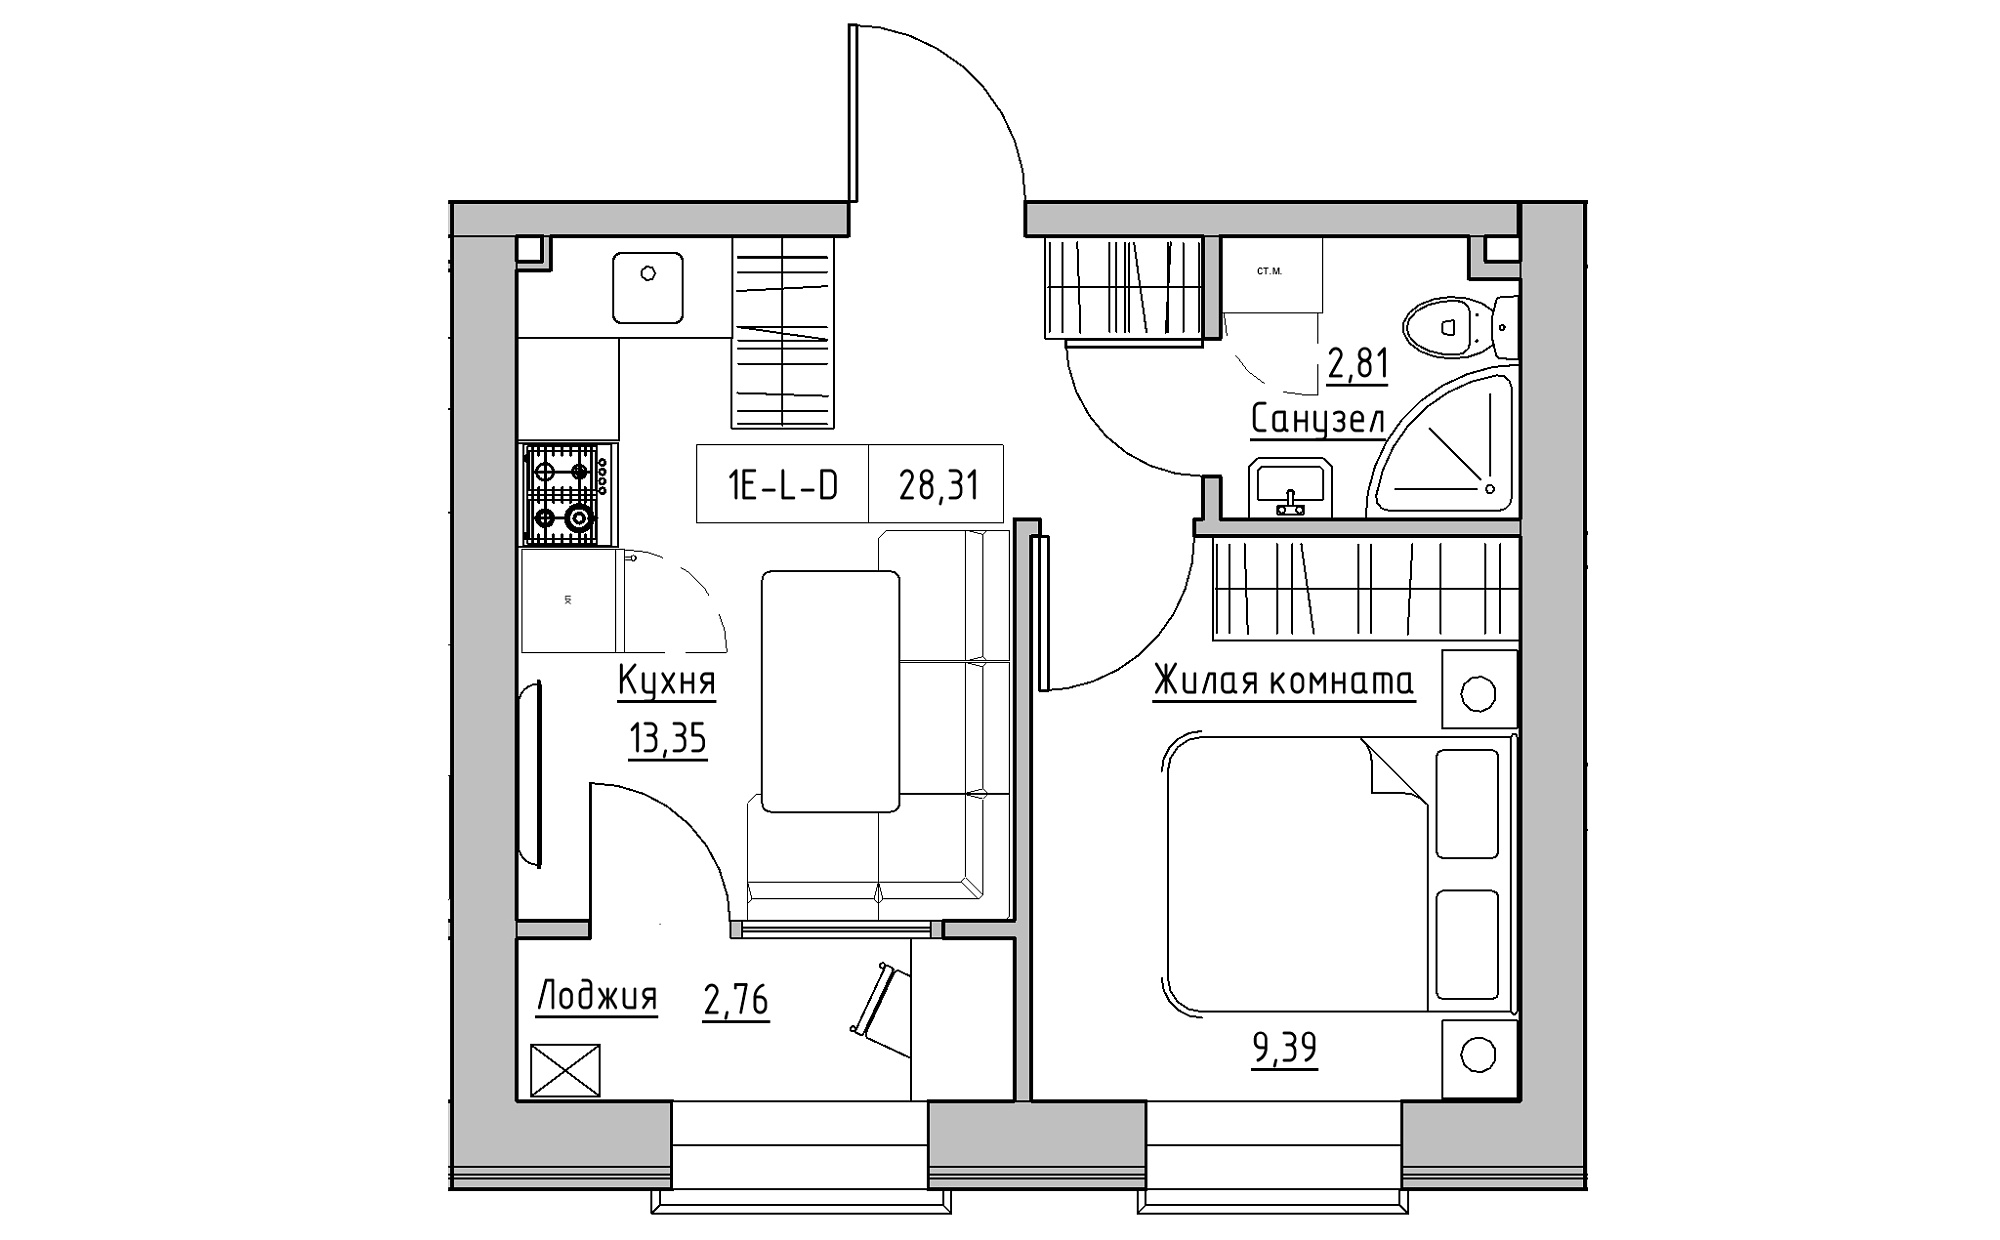 Планировка 1-к квартира площей 28.31м2, KS-022-01/0001.